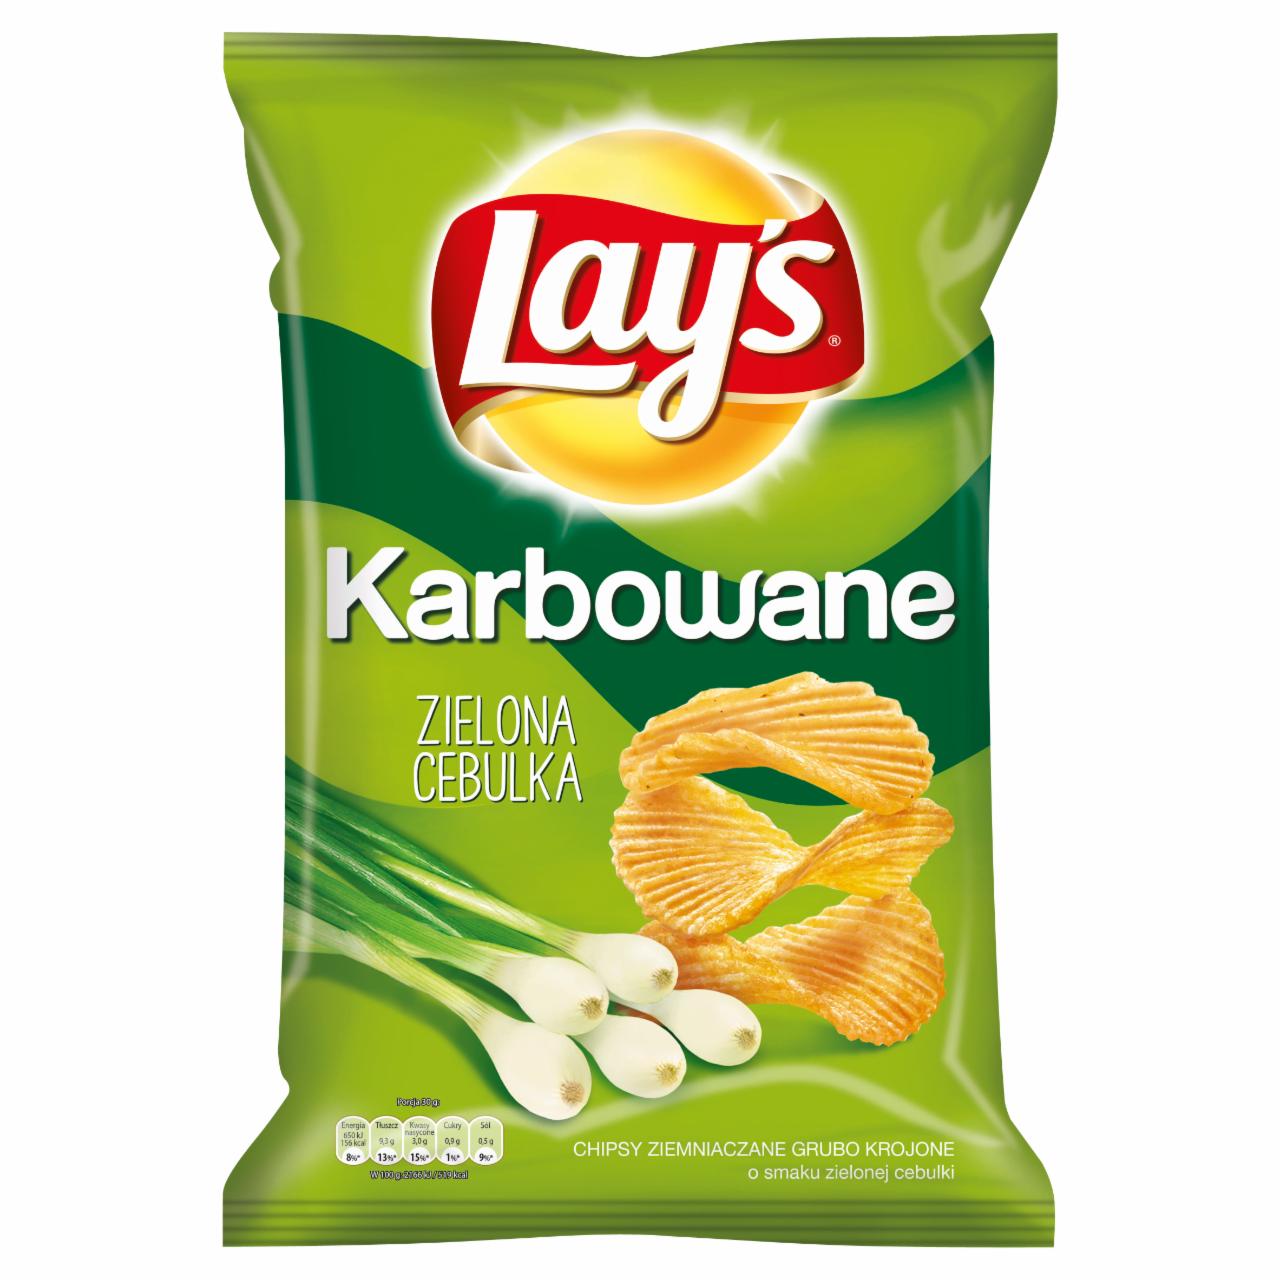 Zdjęcia - Lay's Karbowane o smaku Zielona Cebulka Chipsy ziemniaczane 150 g